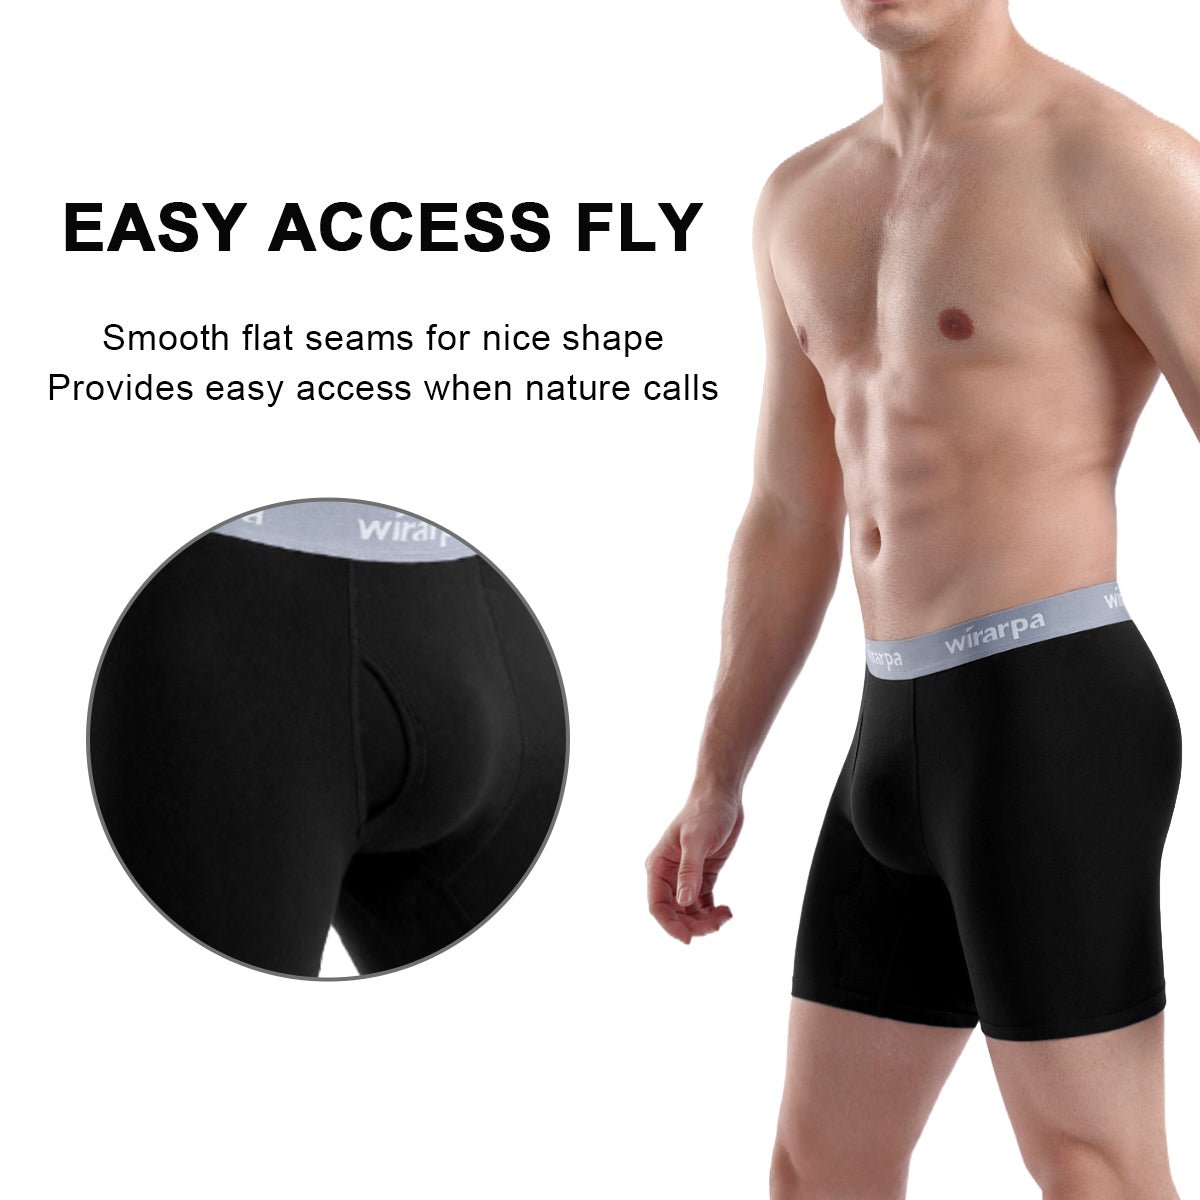 wirarpa Men's Cotton Boxer Briefs Underwear Regular Leg 4 Pack ...